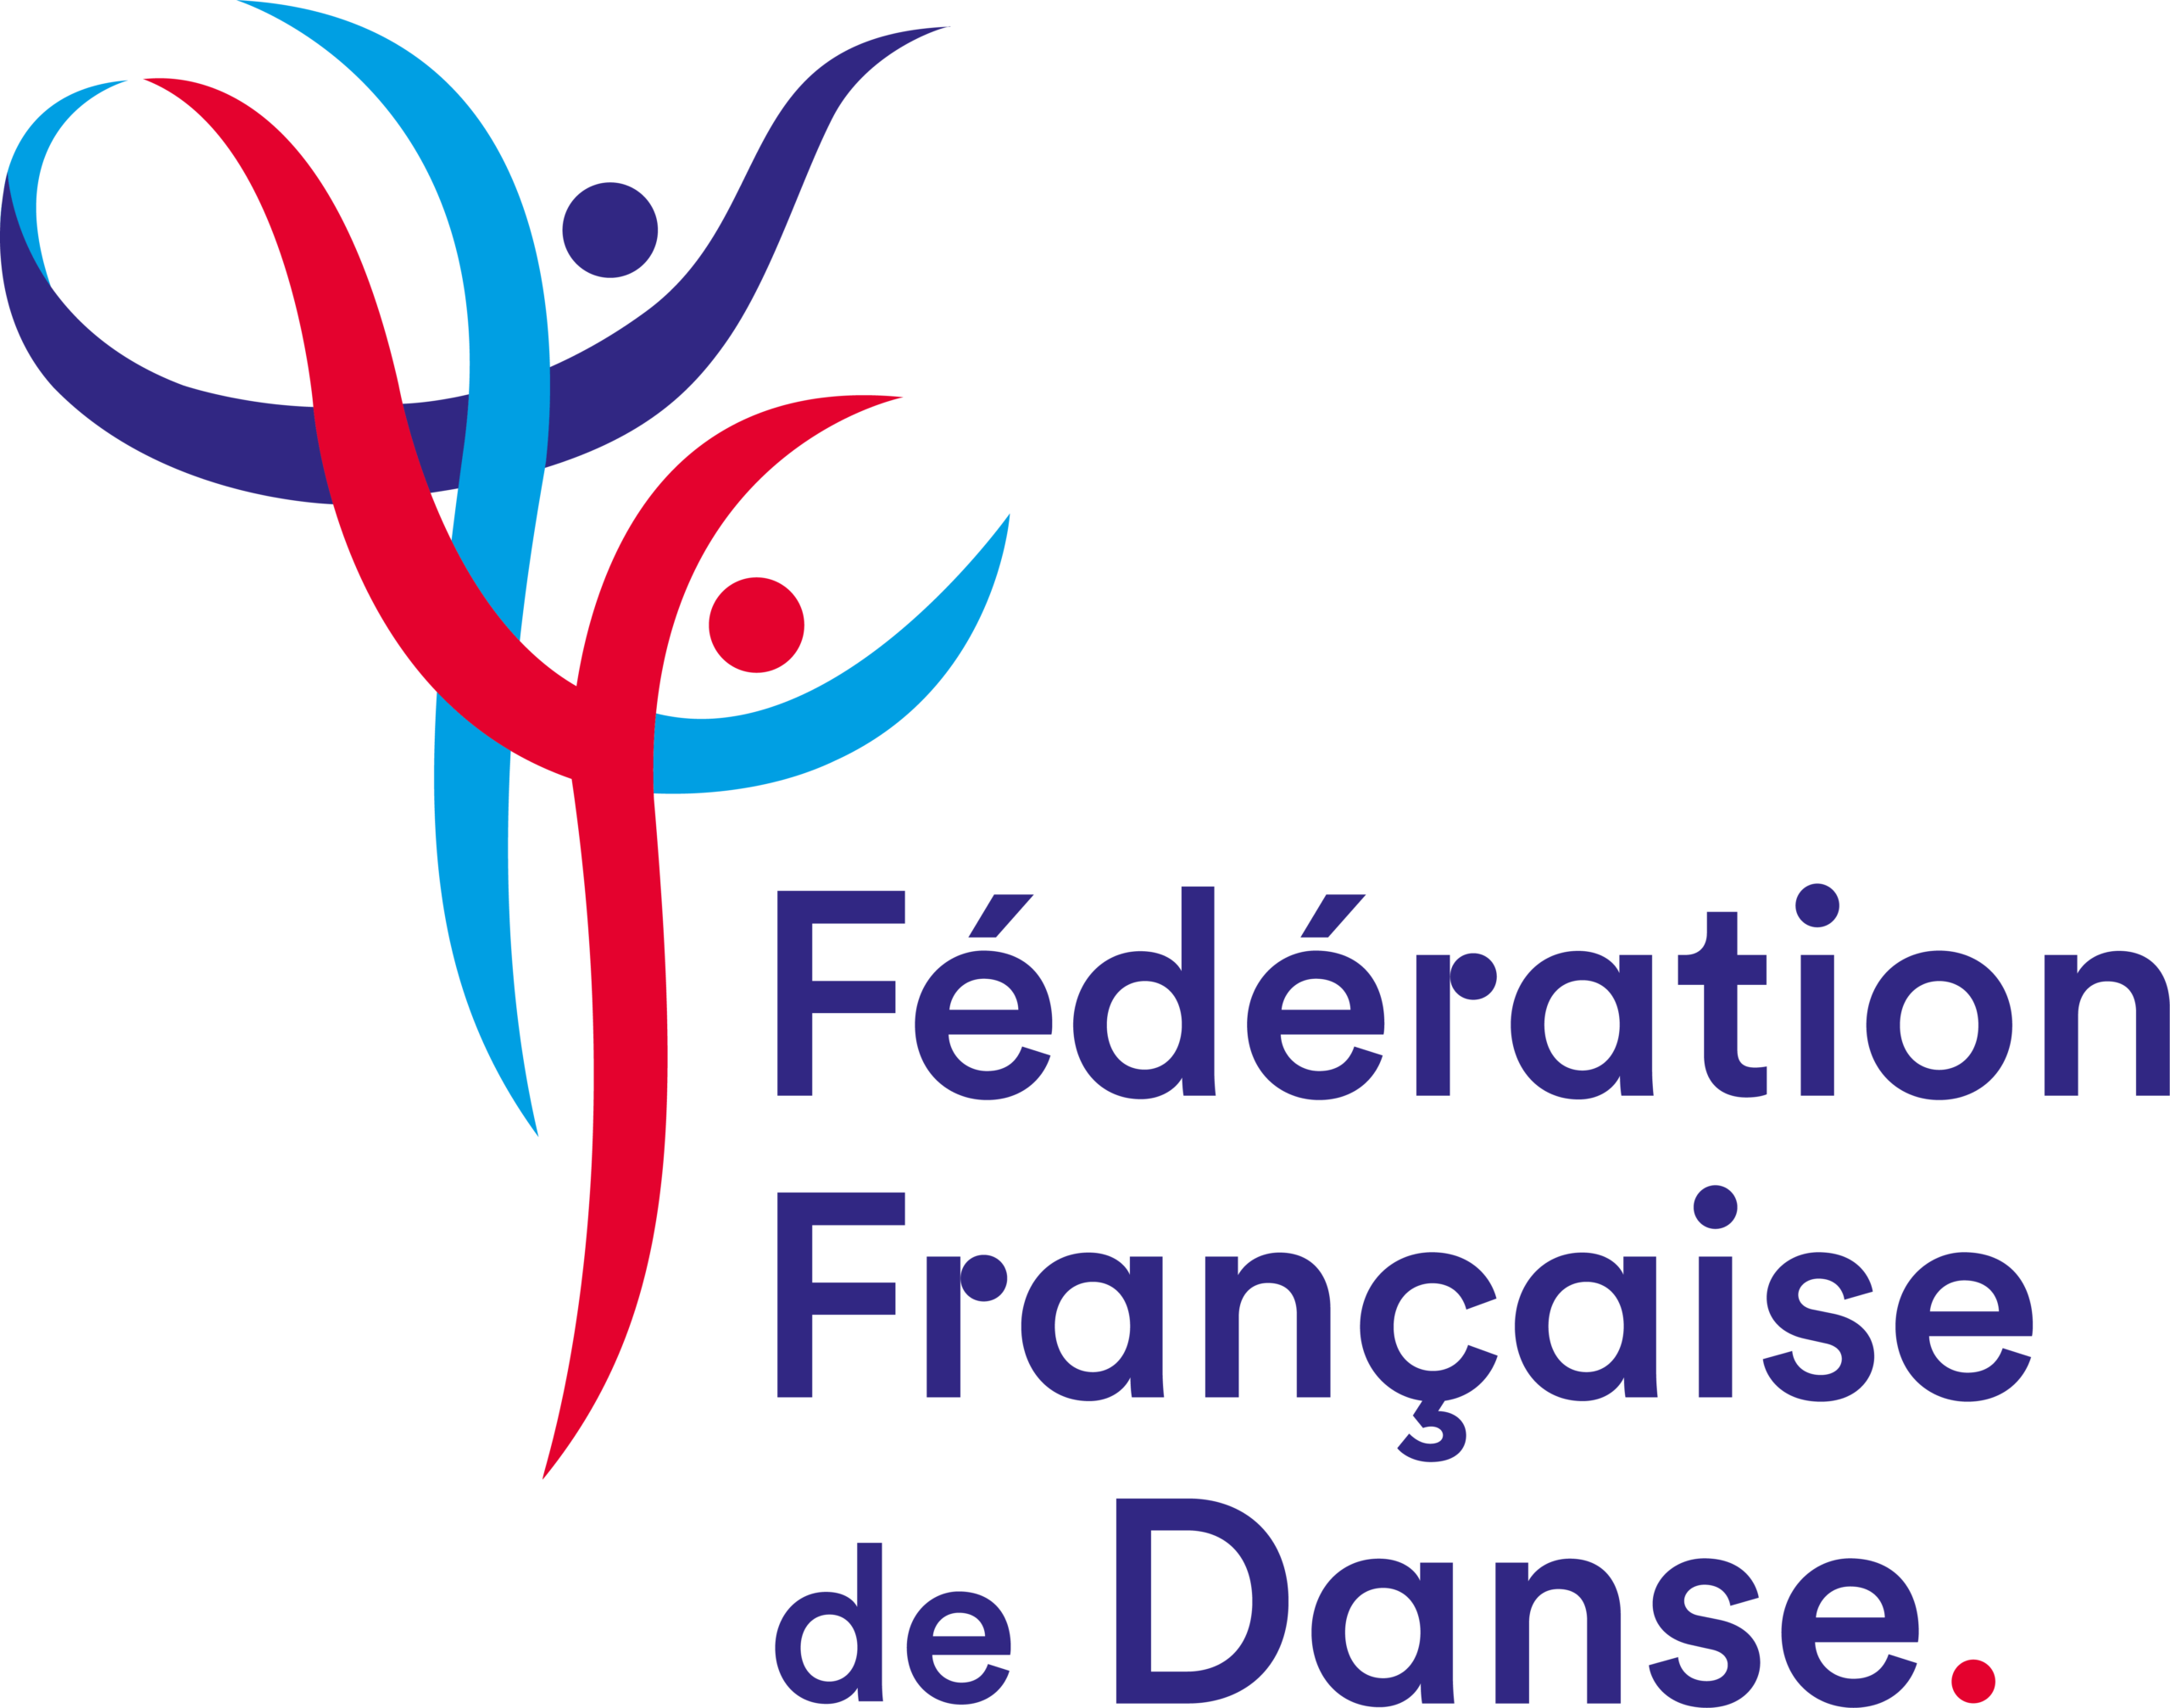 LOGO Fédération française de Danse